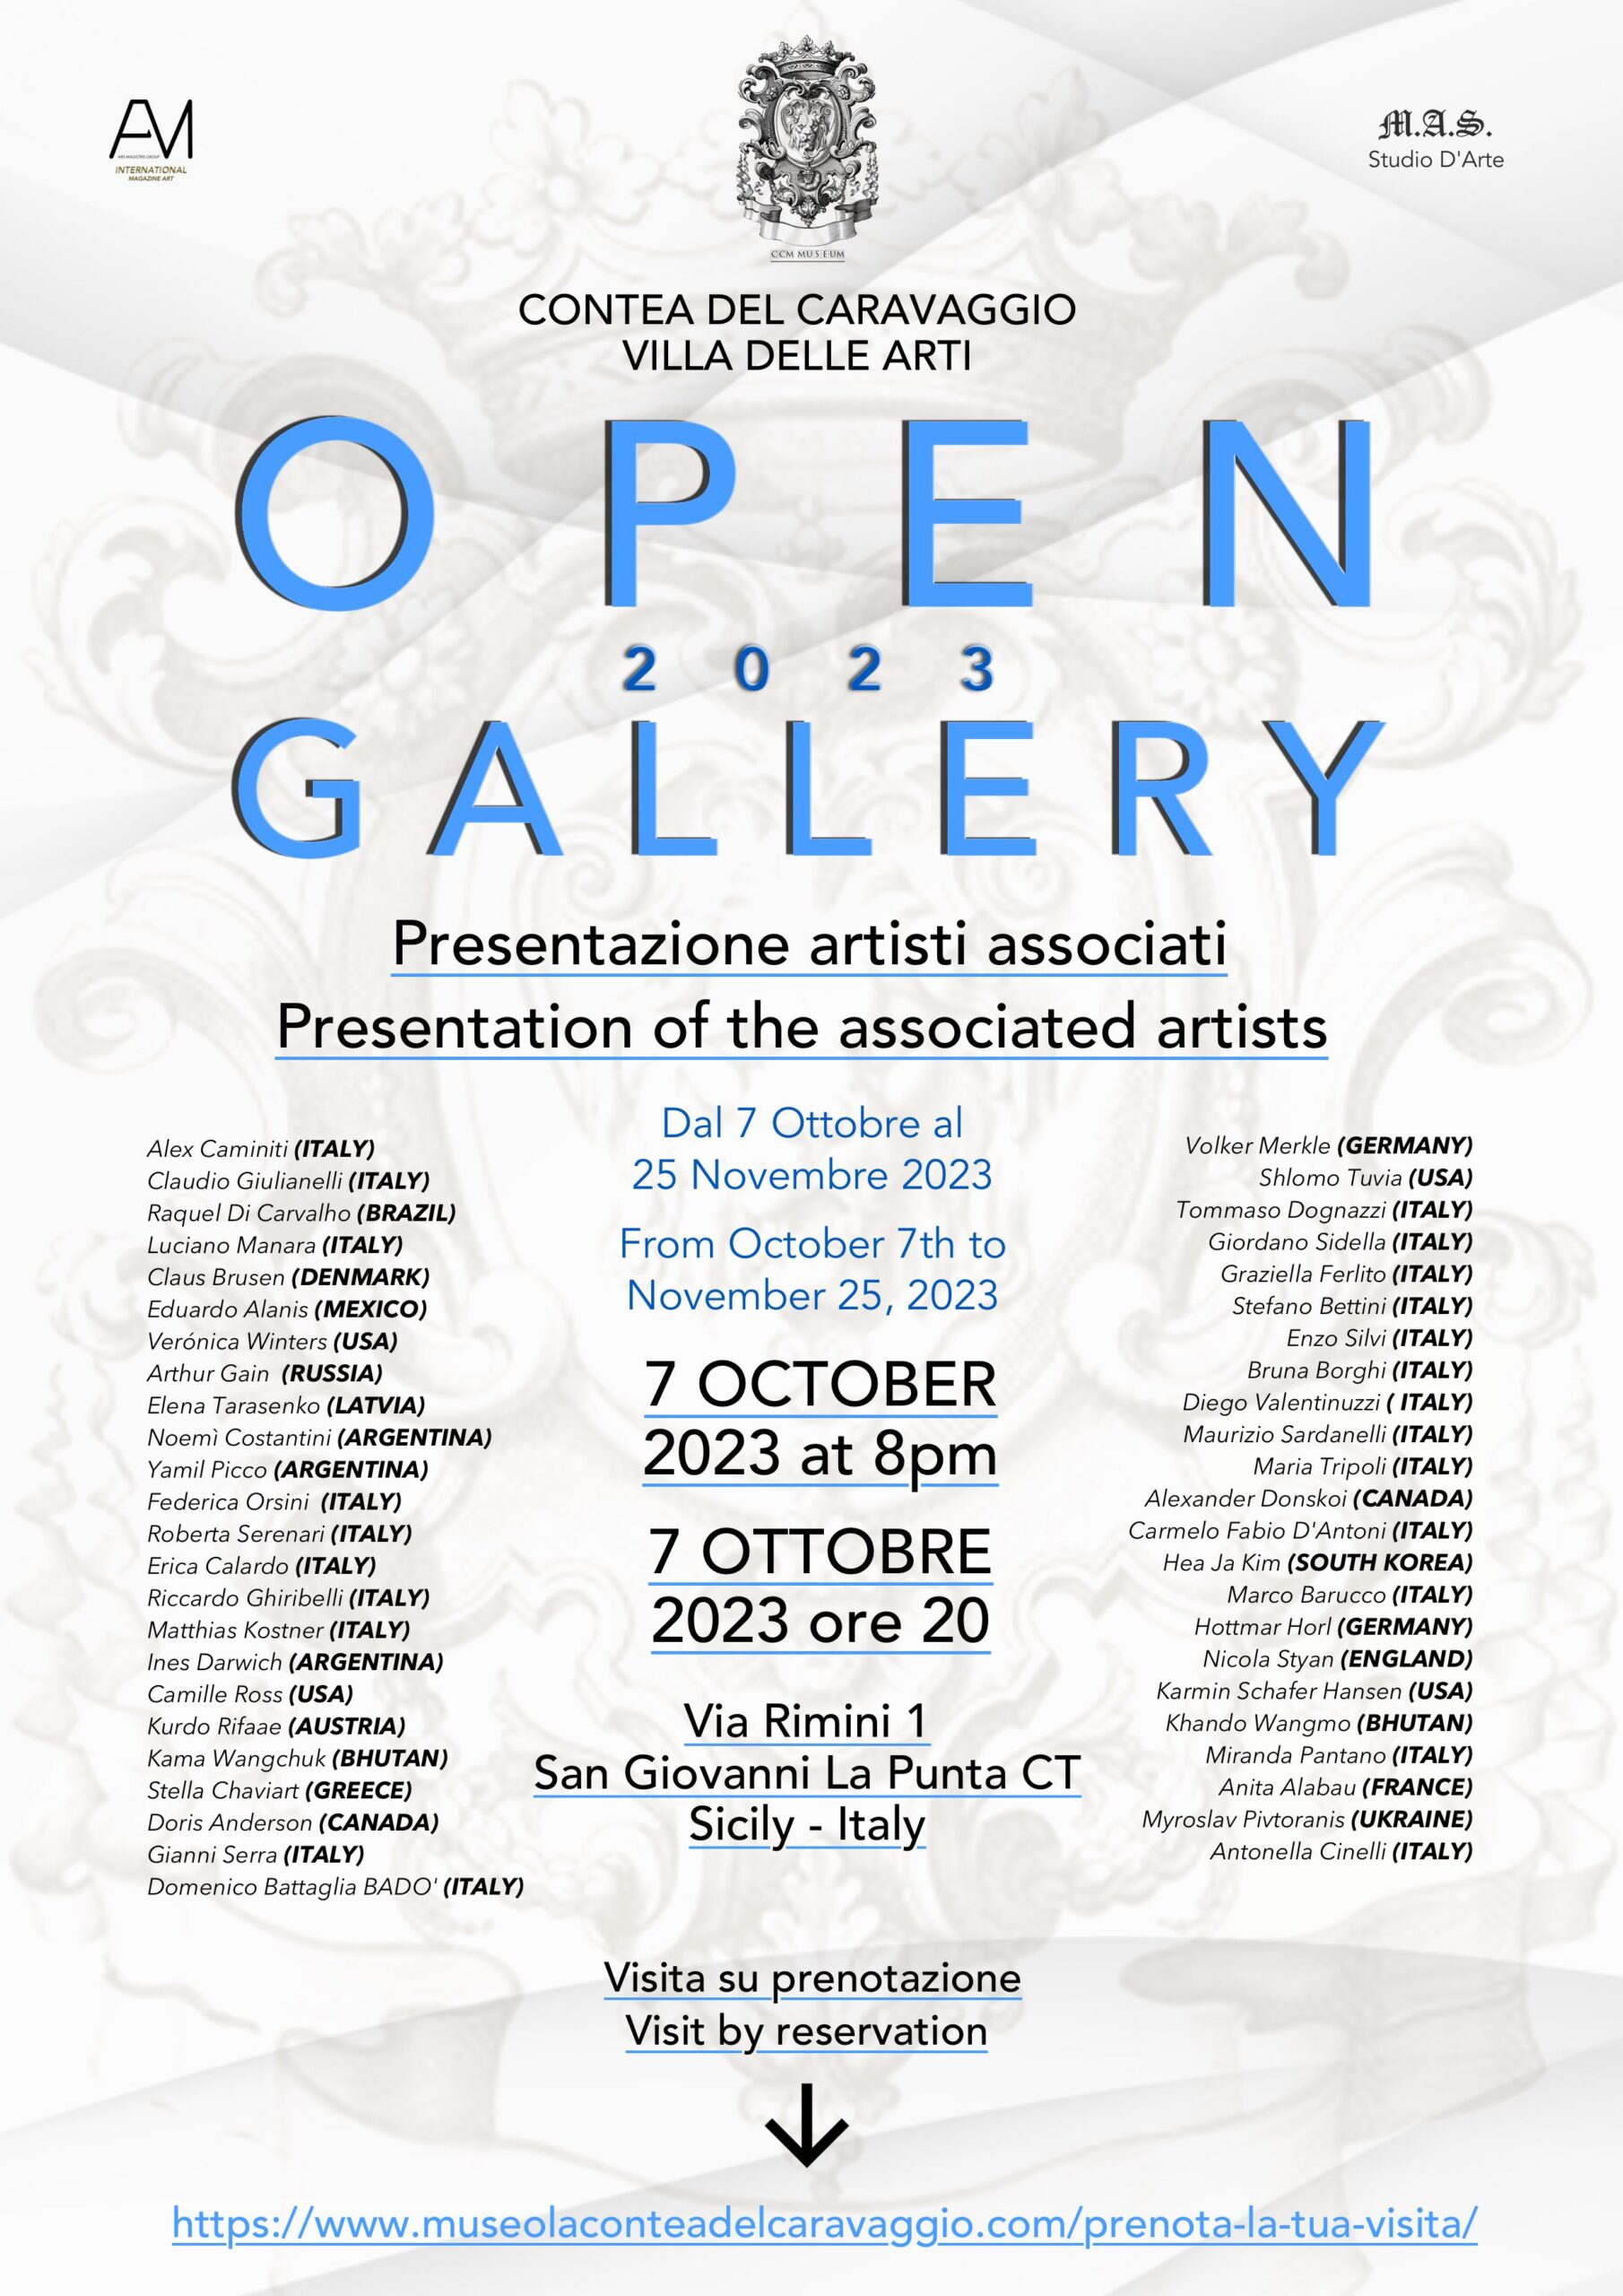 OPEN GALLERY 2023 – Contea del Caravaggio – Villa delle Arti dal 7 Ottobre al 25 Novembre 2023